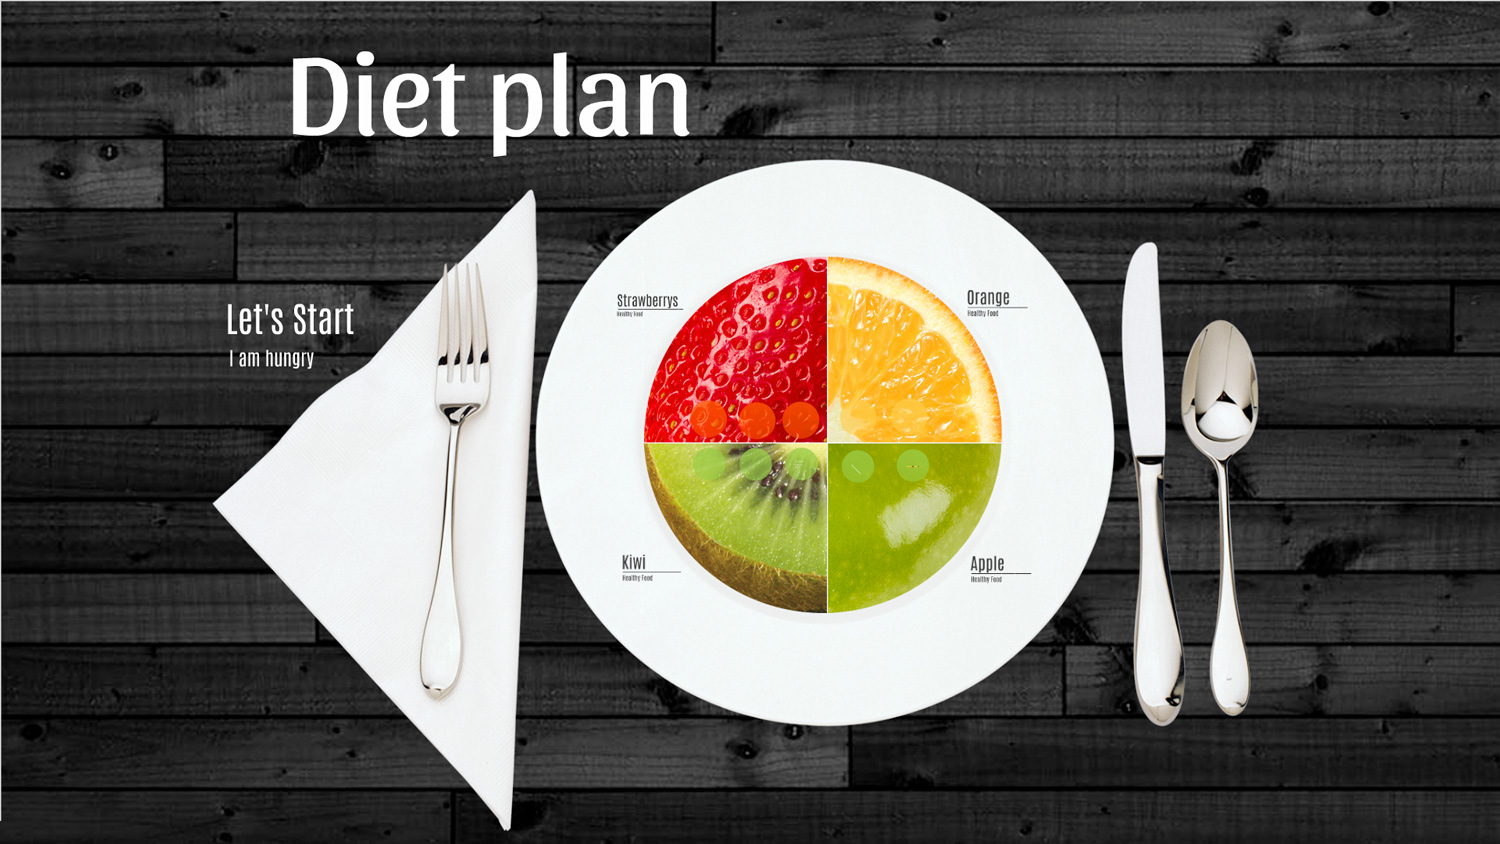 Diet Plan - Prezi template